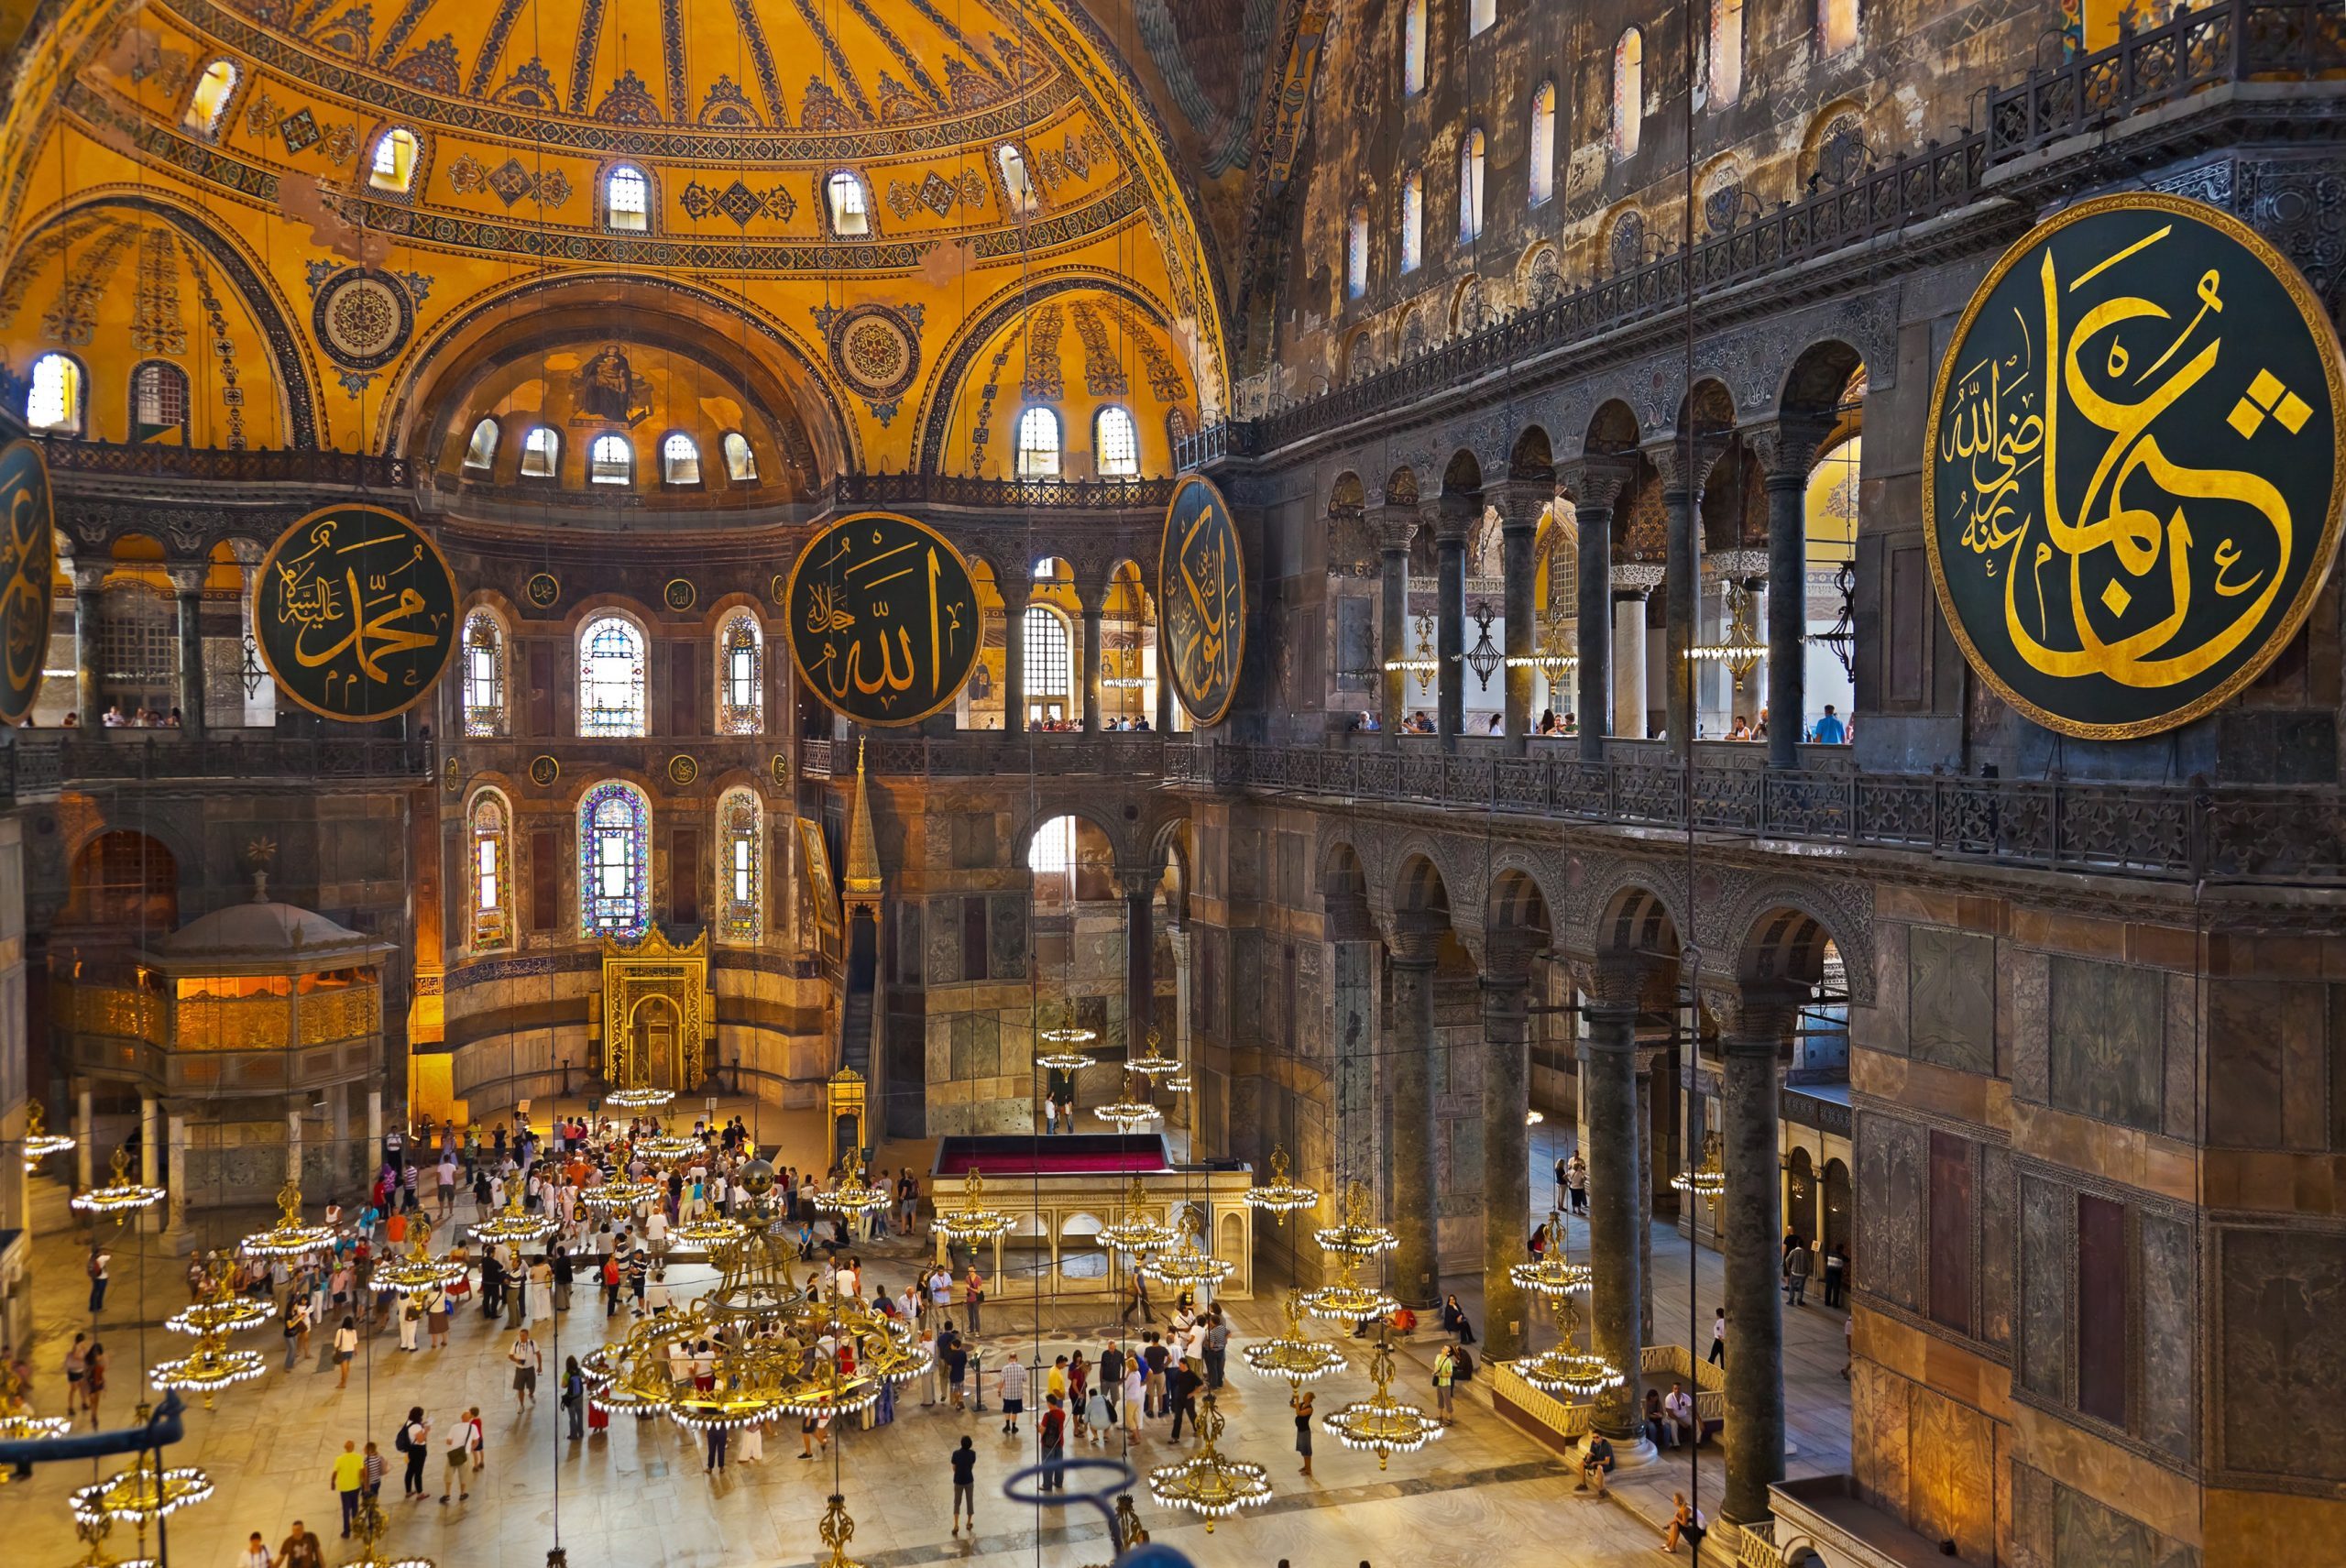 Hagia Sophia interior at Istanbul Turkey - architecture background